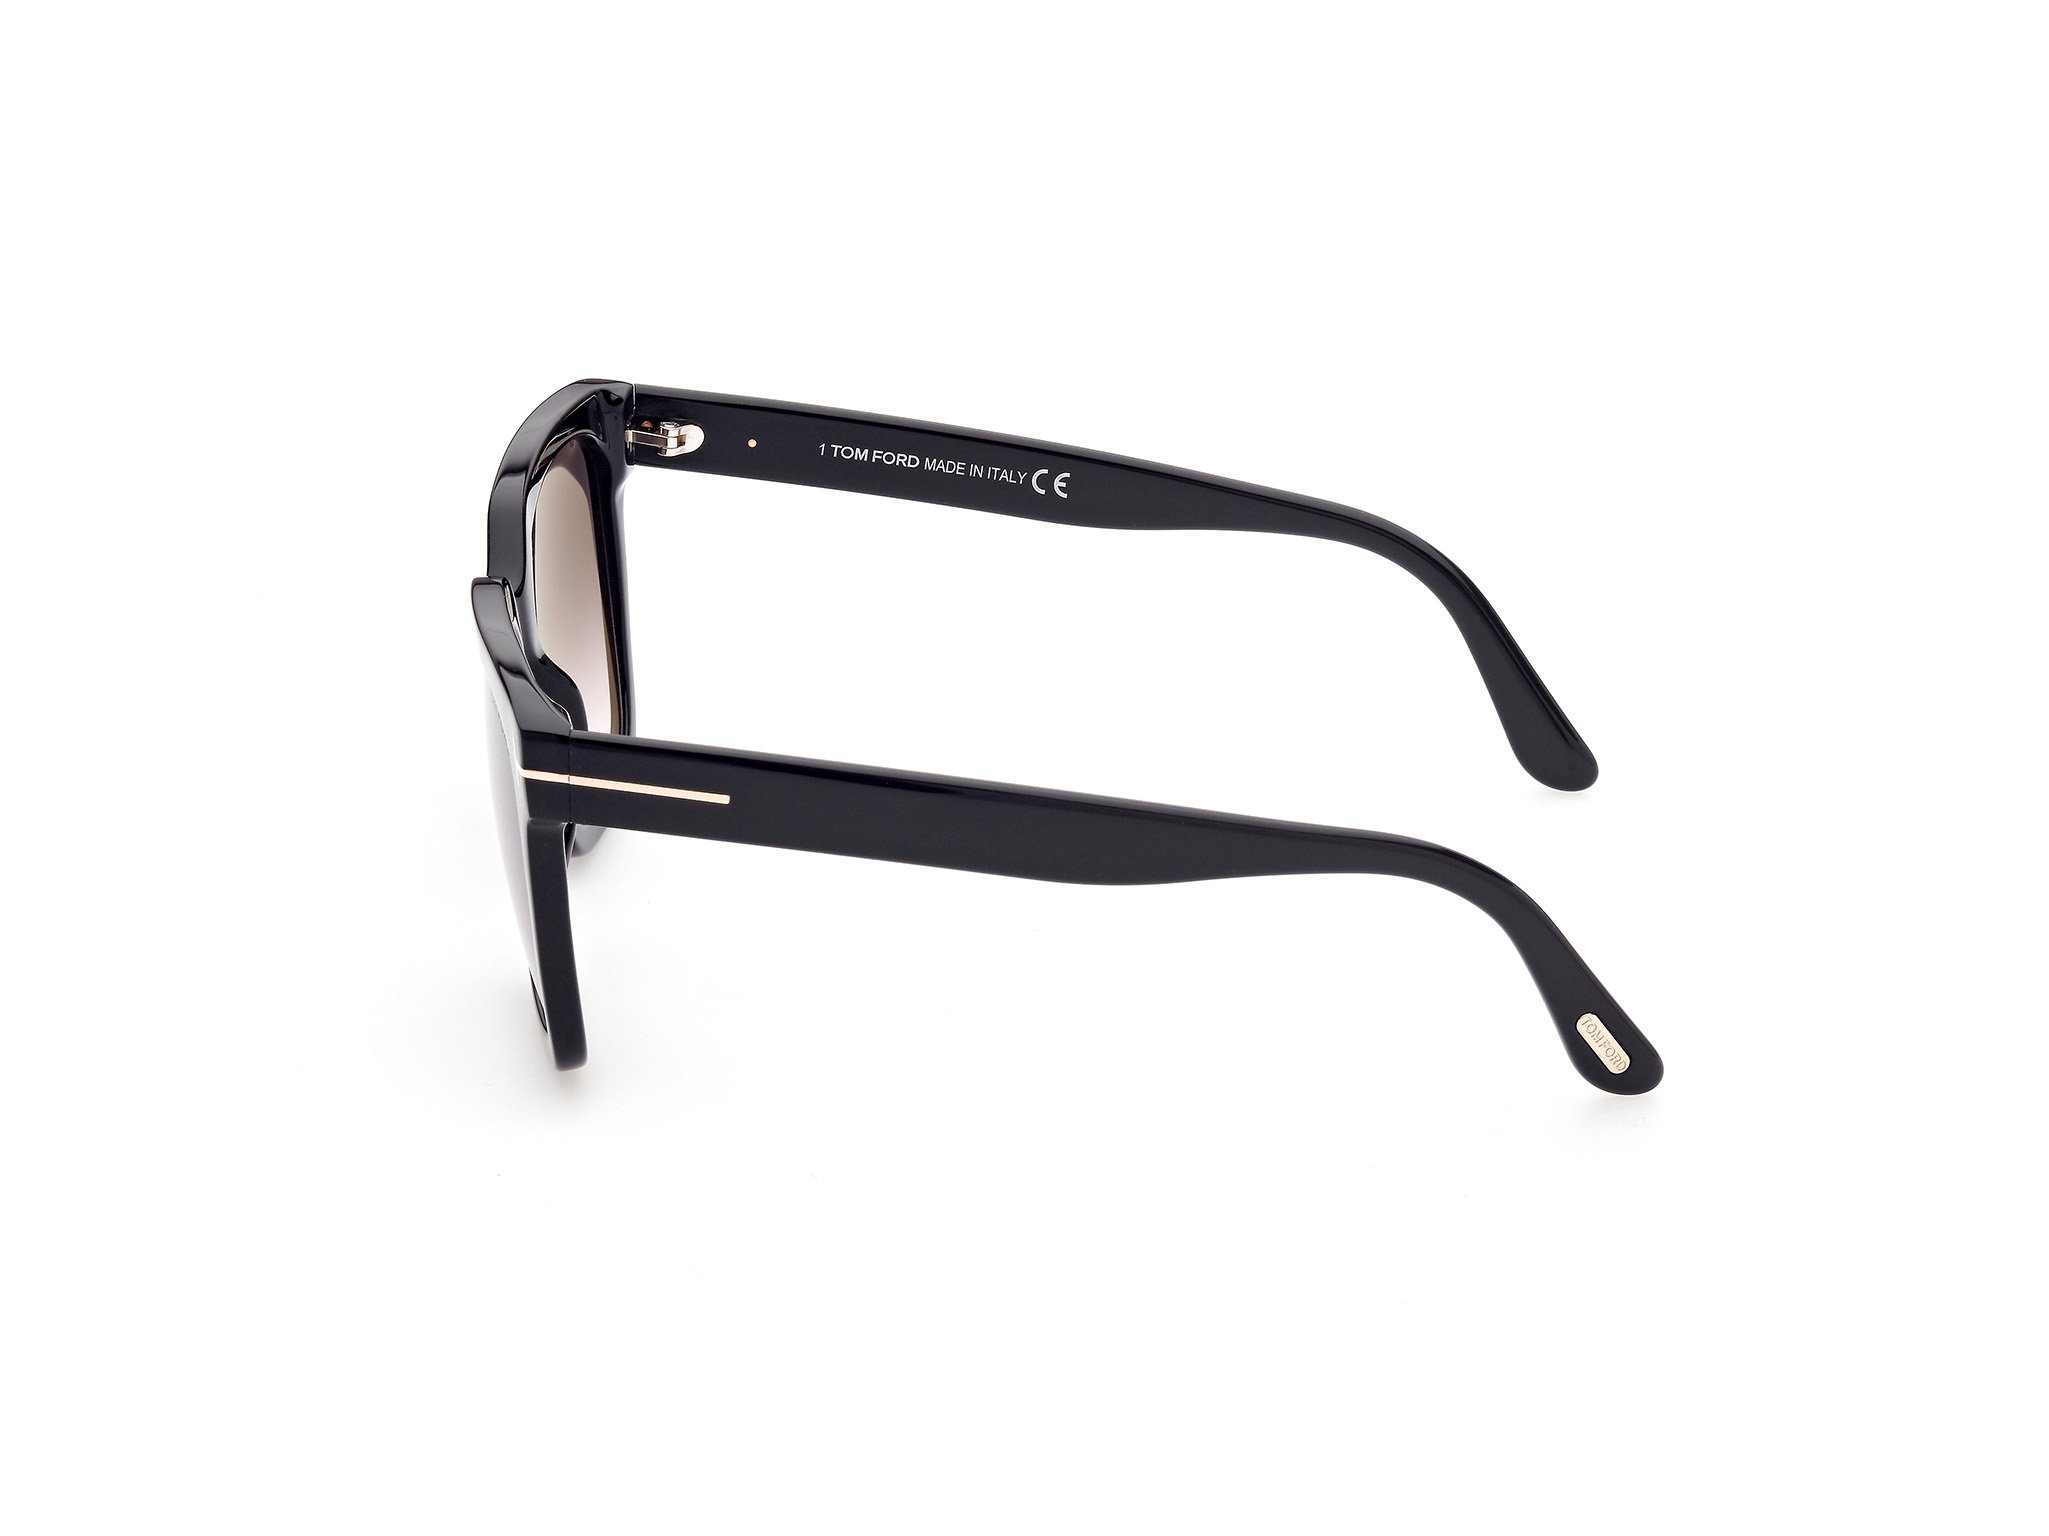 Das Bild zeigt die Sonnenbrille Selby FT0952 von der Marke Tom Ford in schwarz seitlich